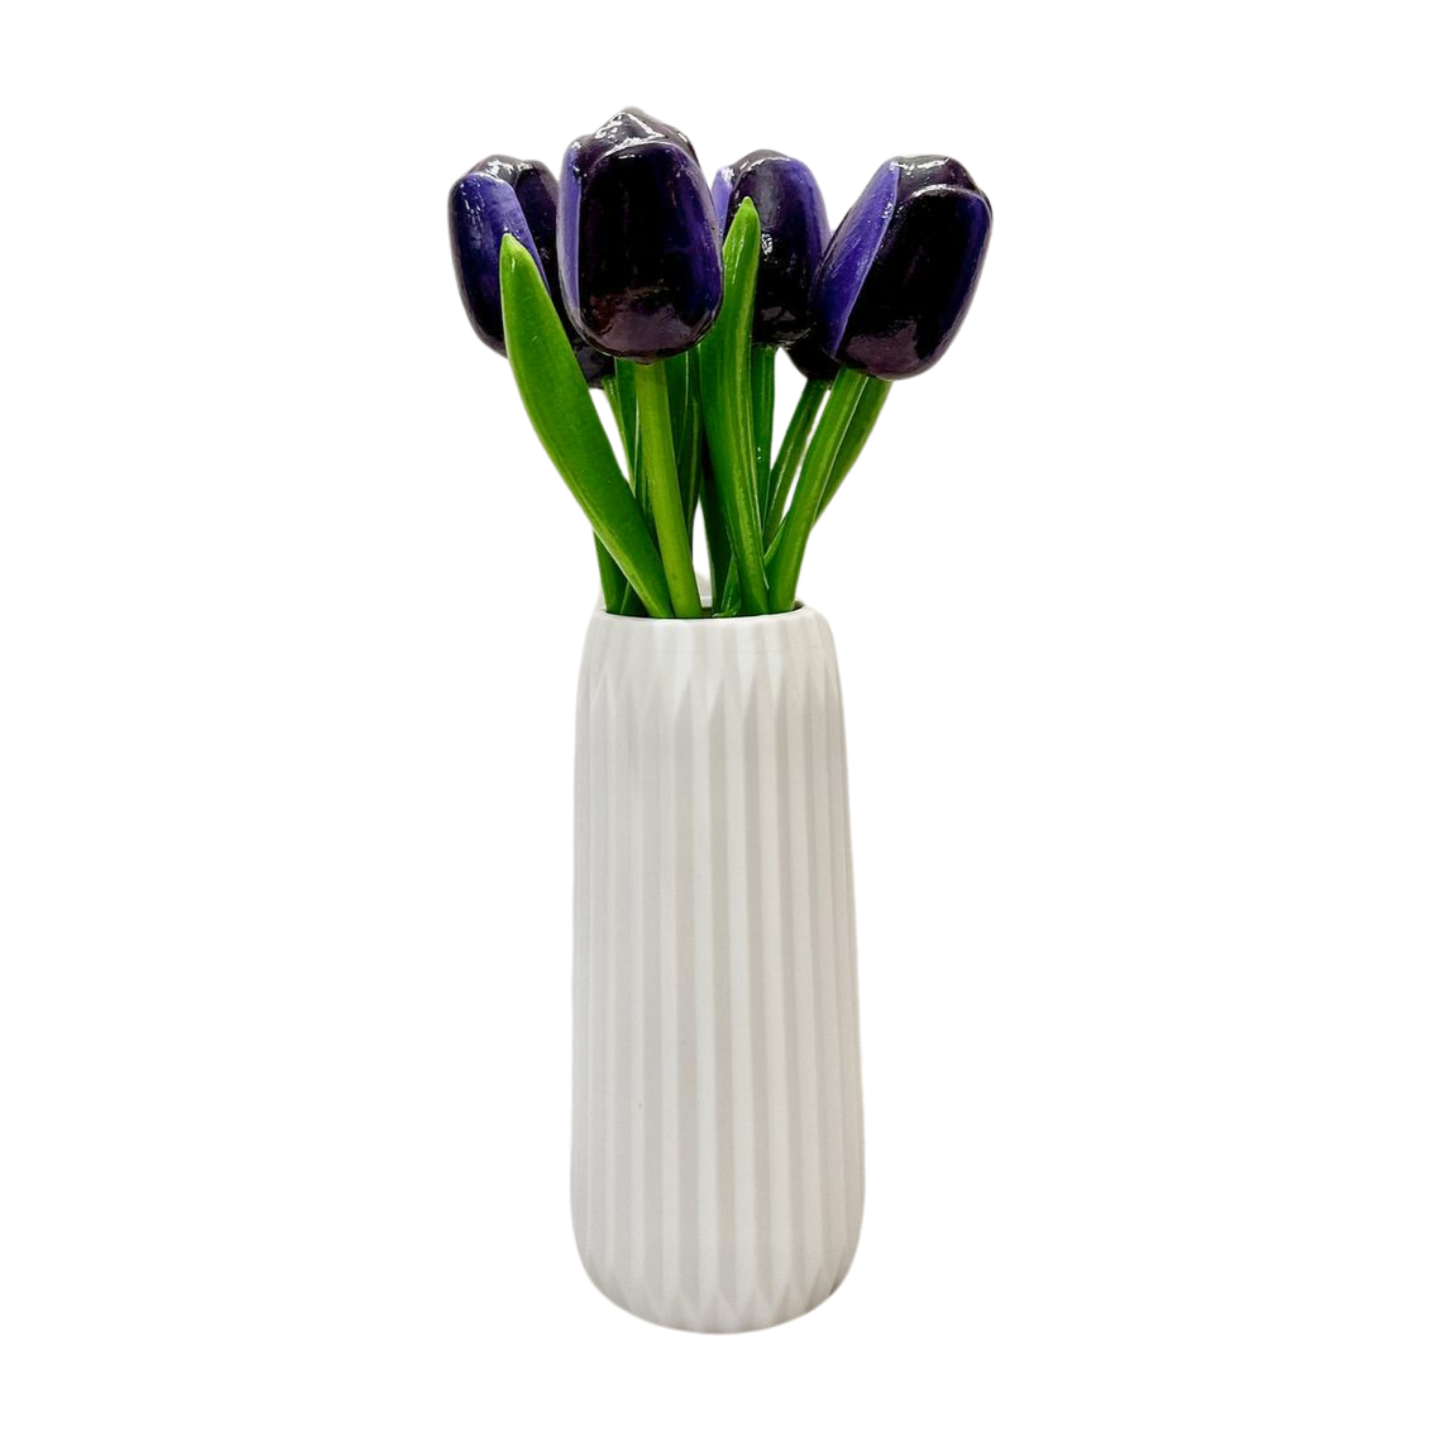 Wooden Dutch tulips in purple